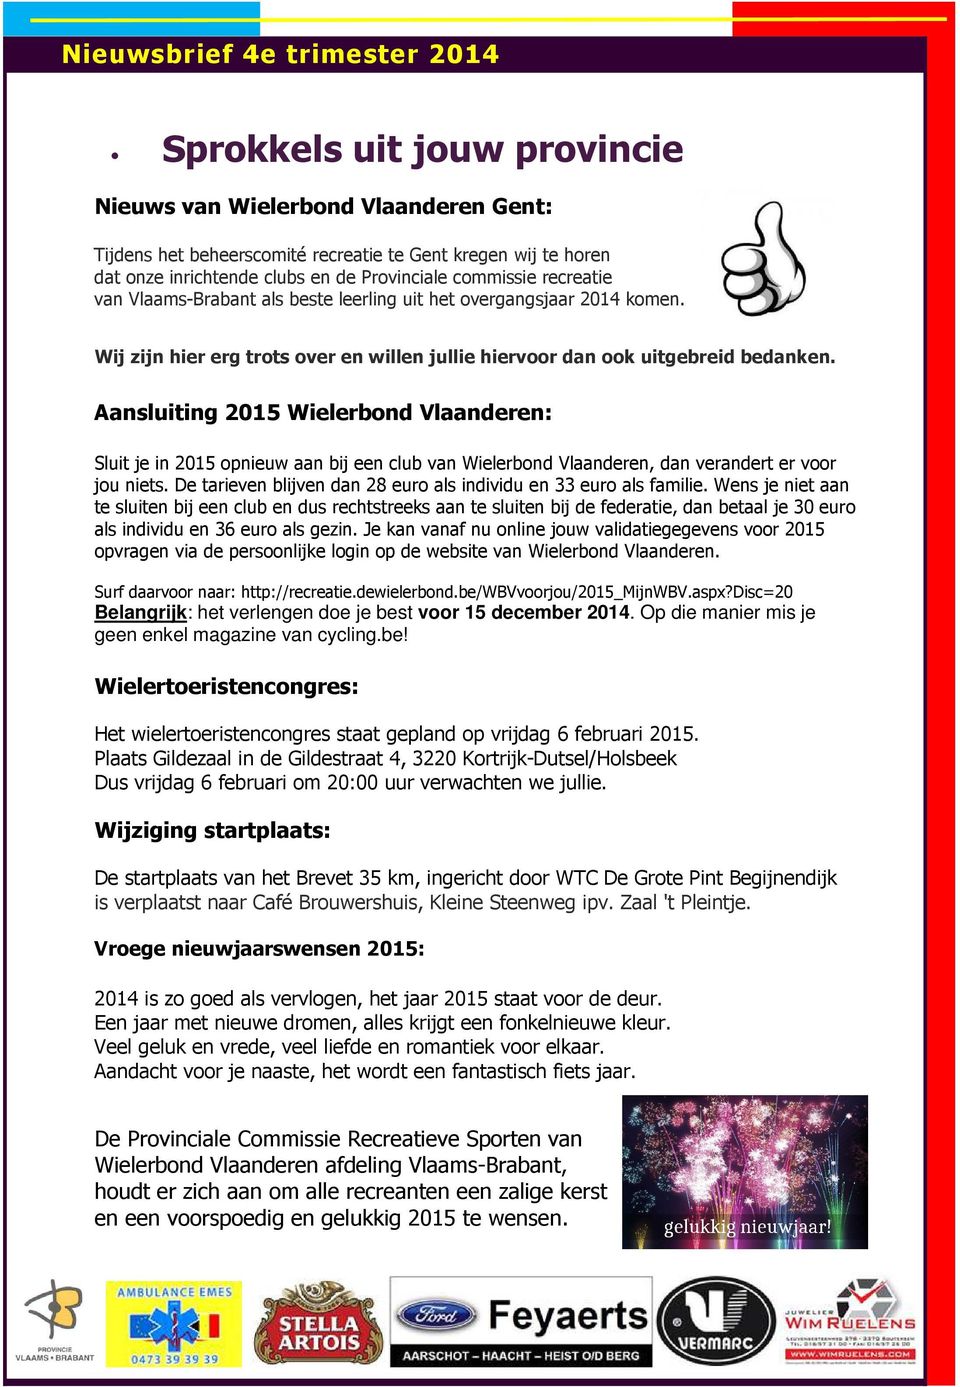 Aansluiting 2015 Wielerbond Vlaanderen: Sluit je in 2015 opnieuw aan bij een club van Wielerbond Vlaanderen, dan verandert er voor jou niets.